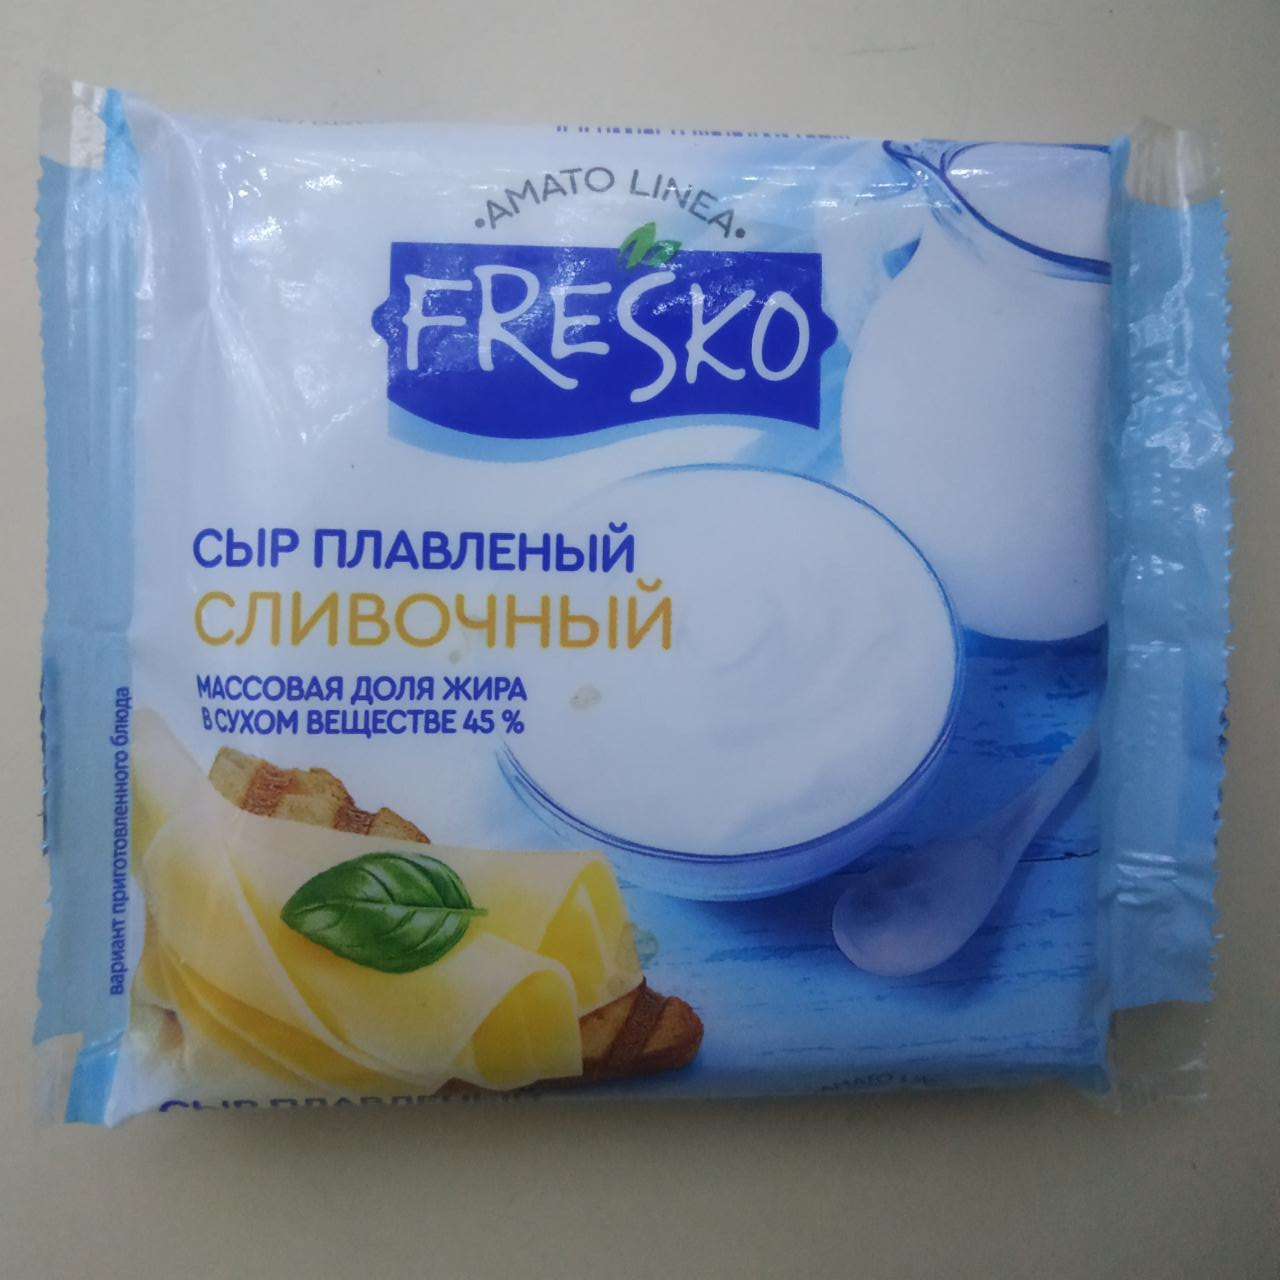 Фото - Сыр плавленный сливочный ломтики Fresko